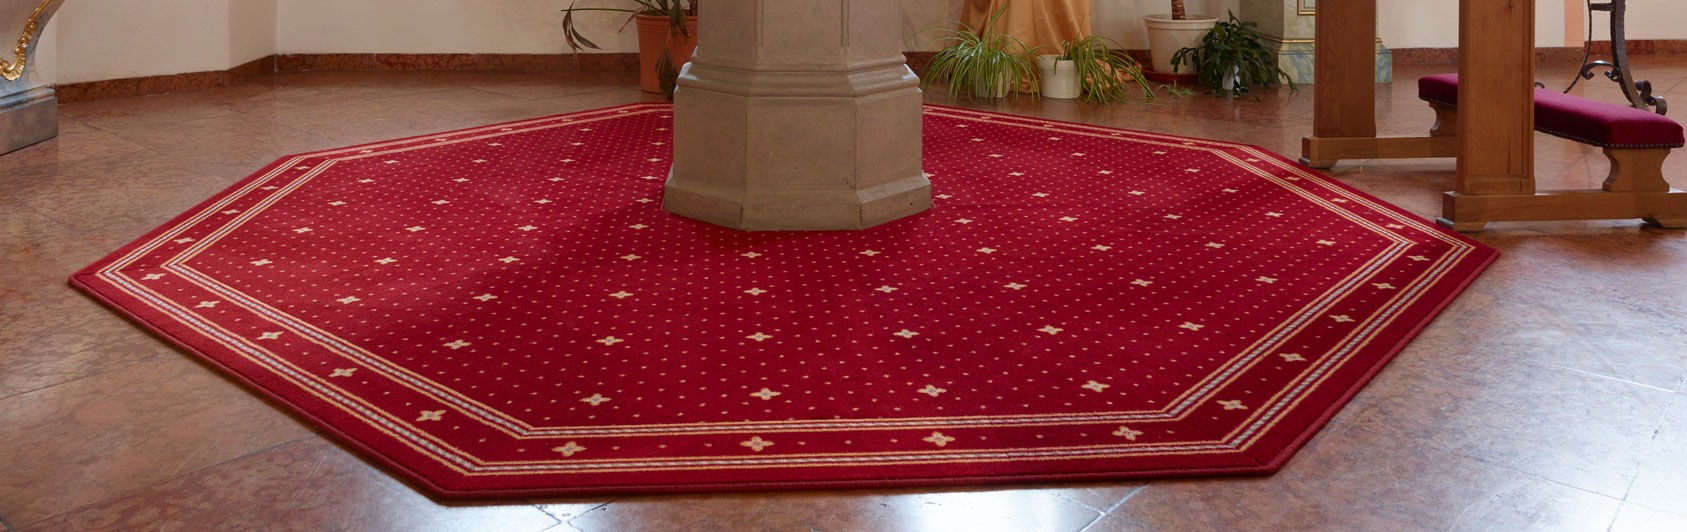 church carpet Capitol baptismal font Lisdorf